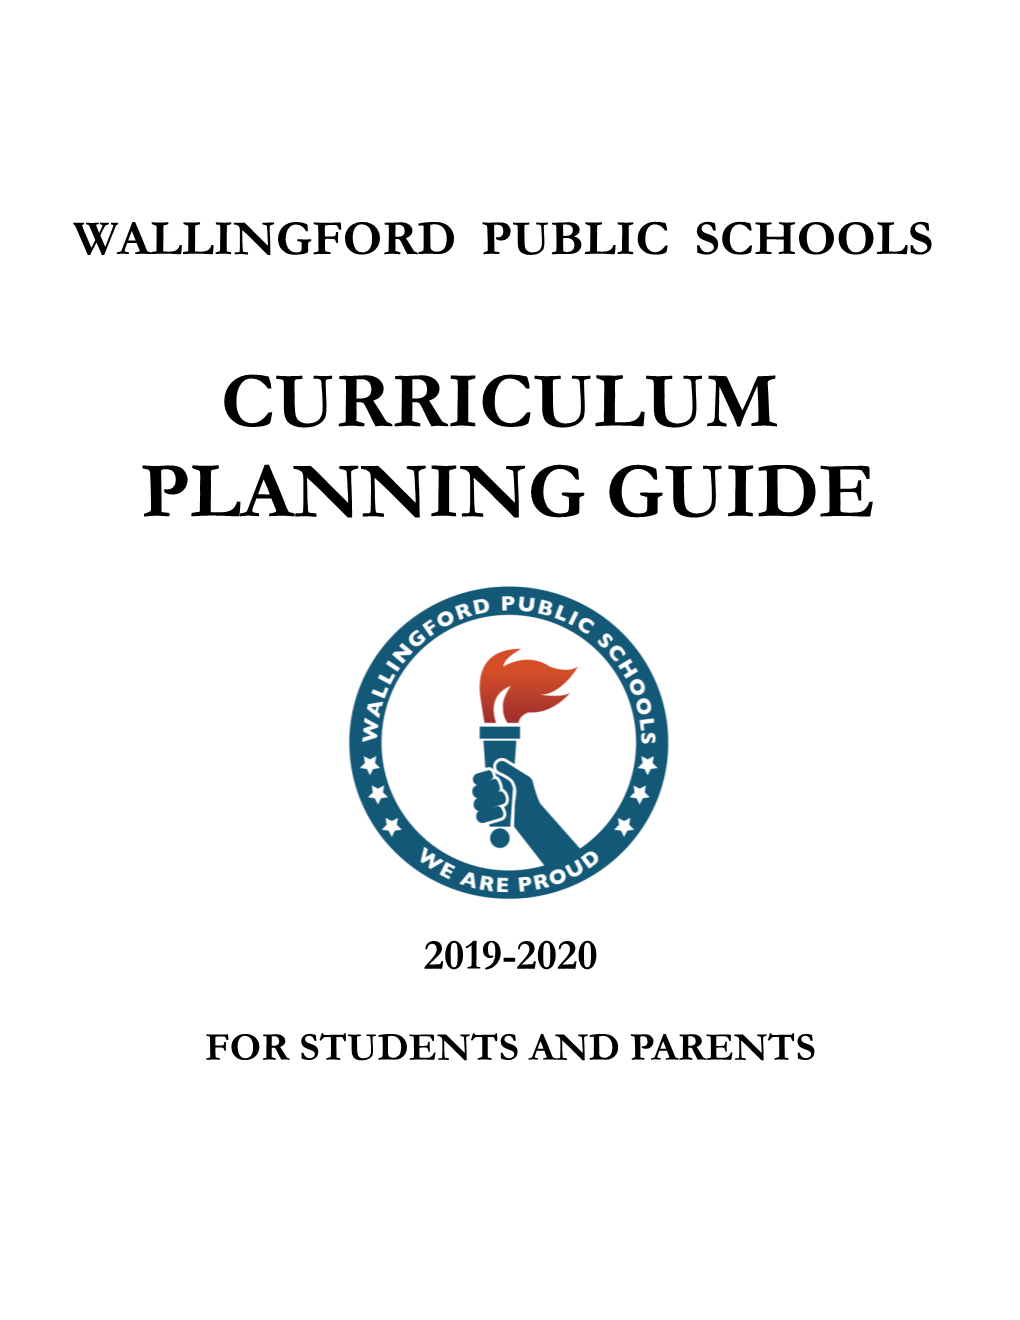 Curriculum Planning Guide